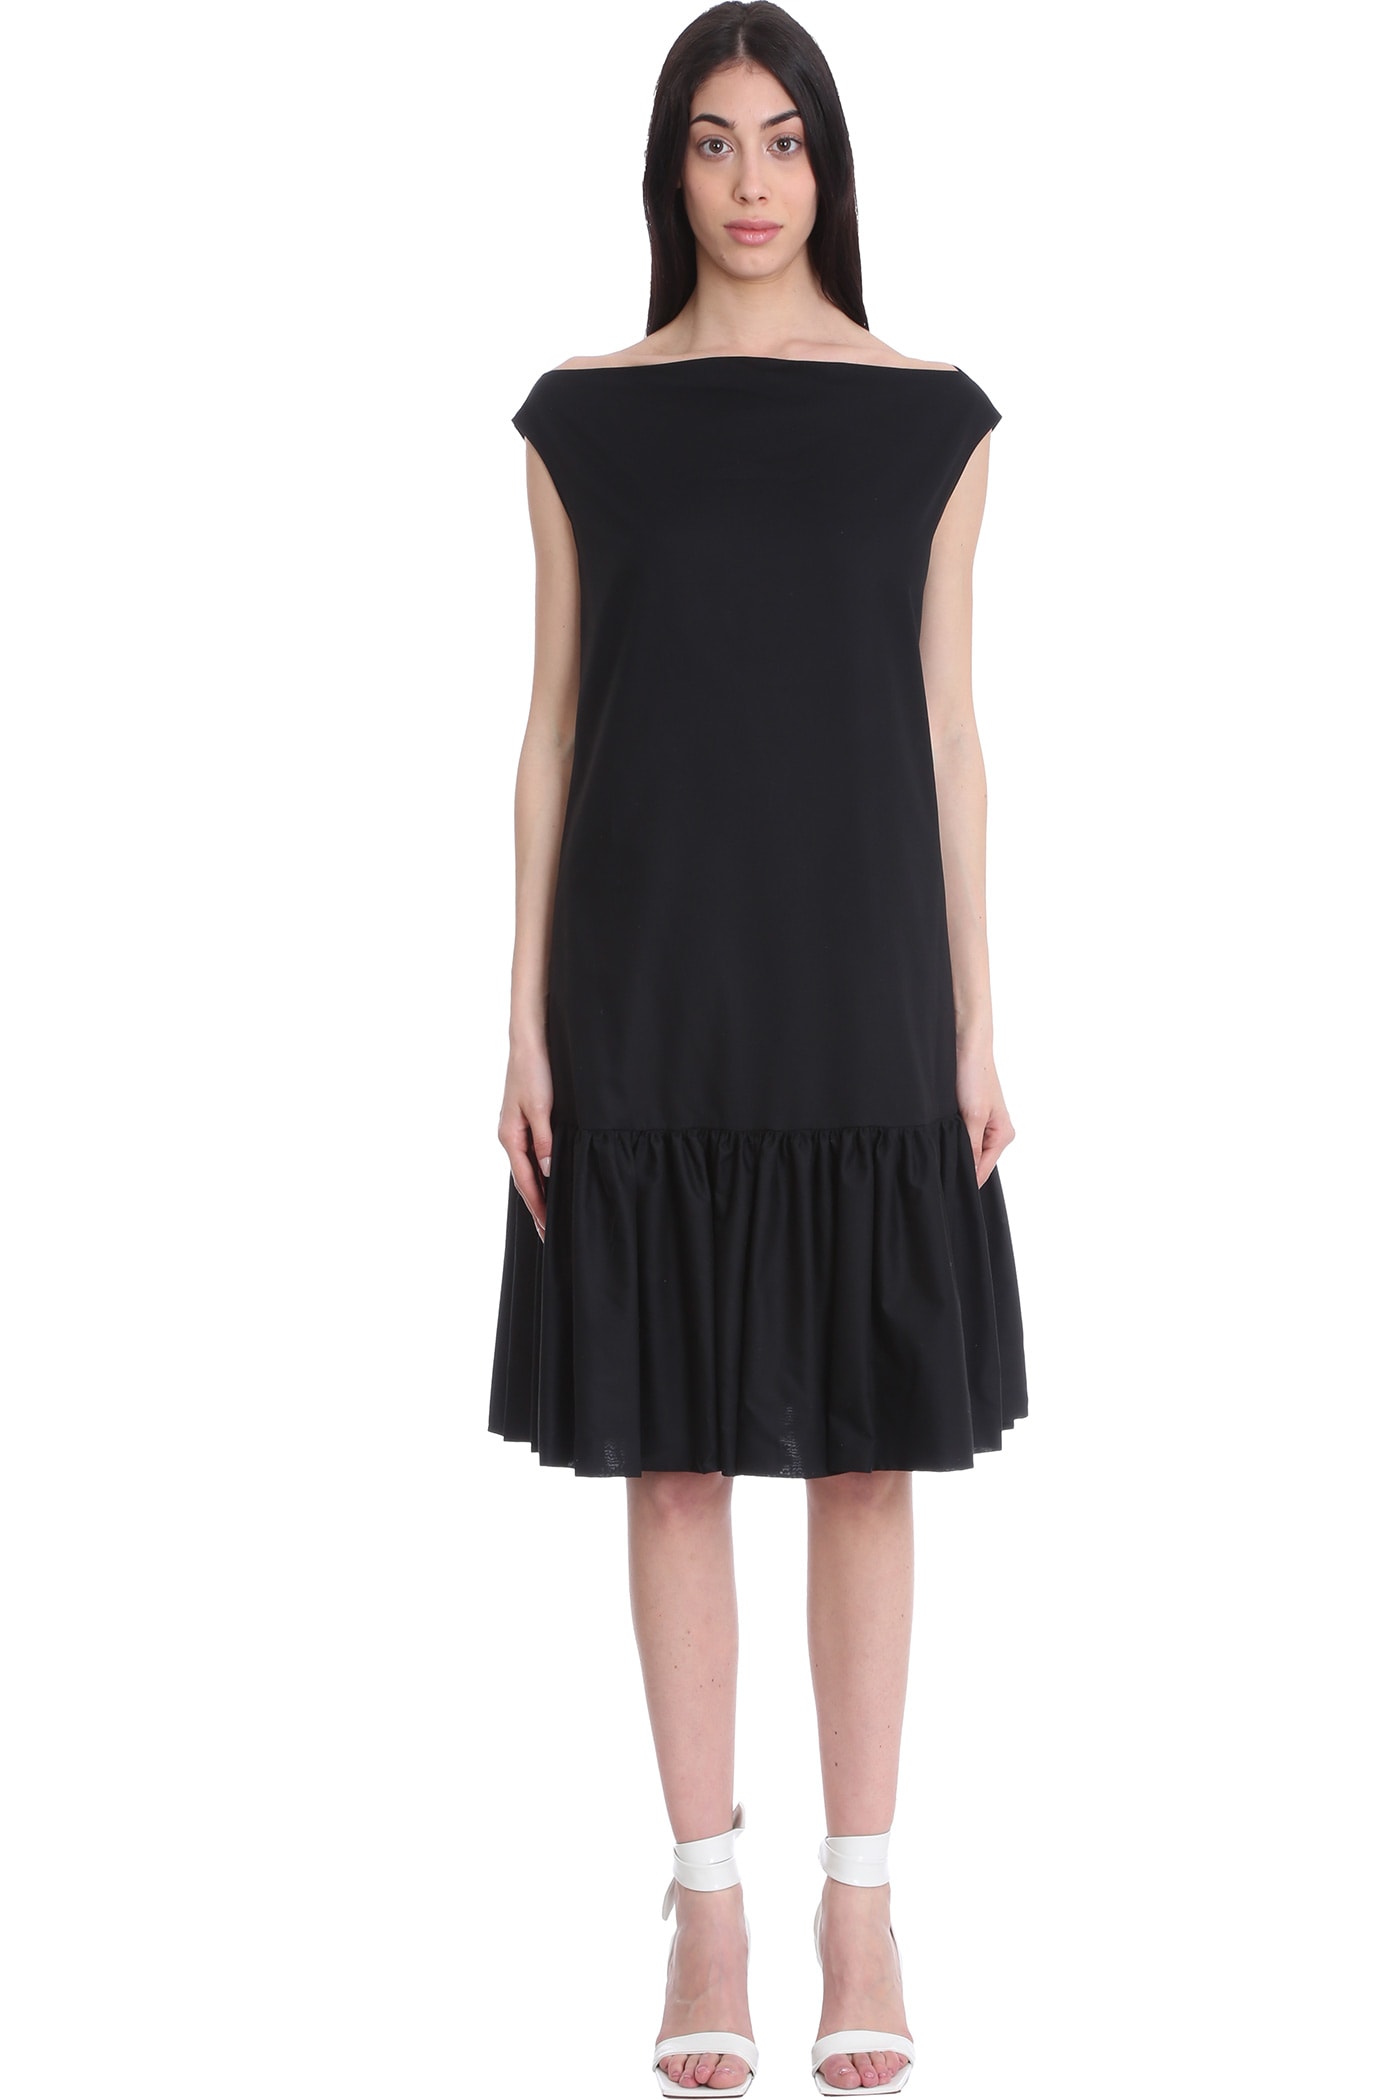 LAutre Chose Dress In Black Cotton